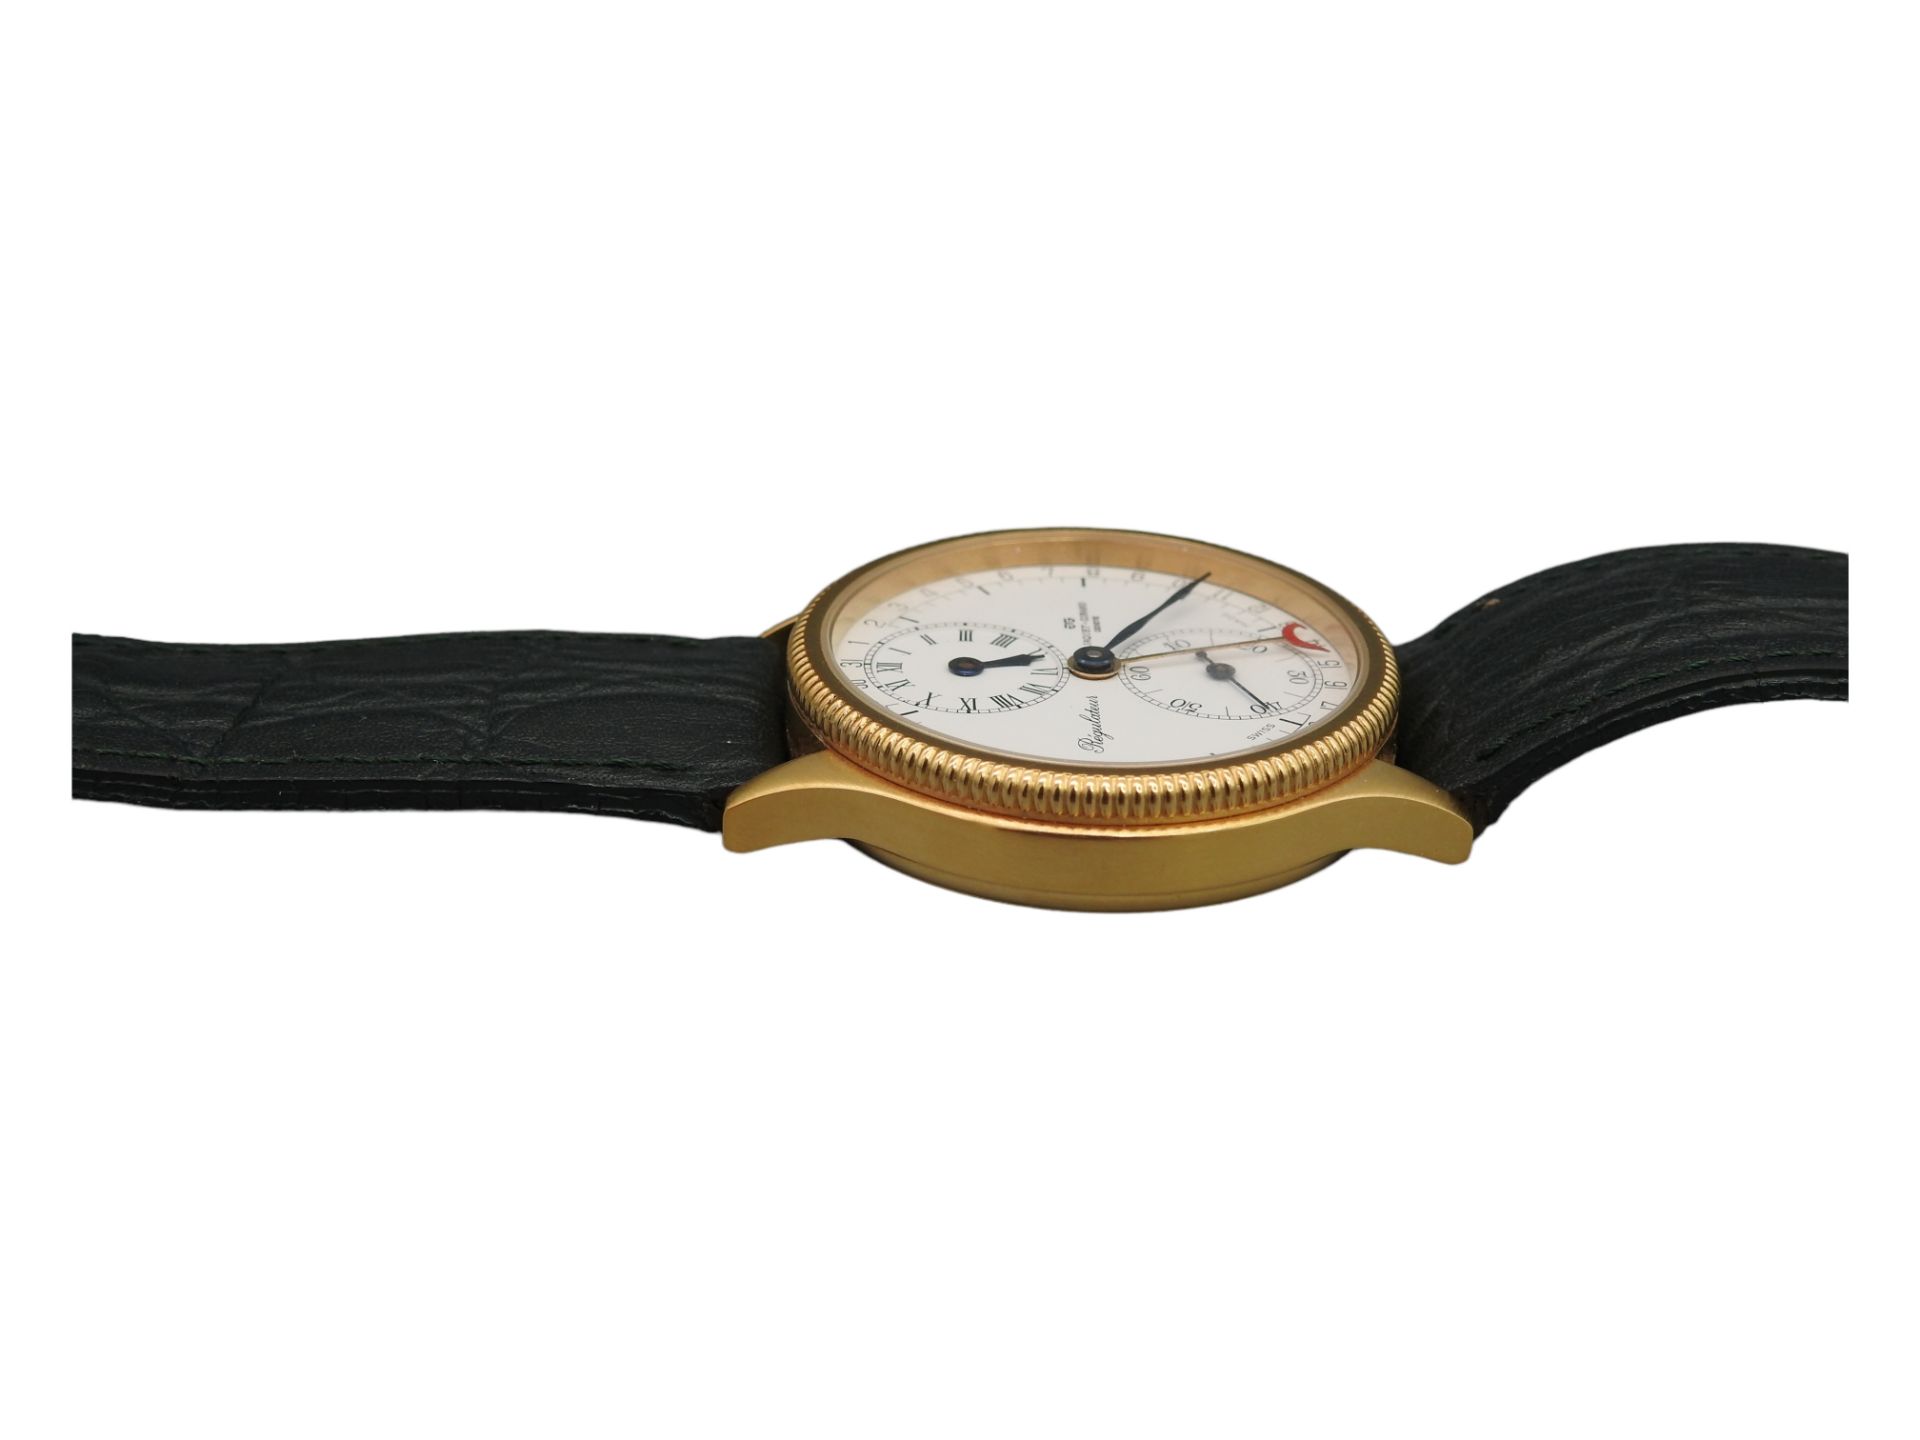 Armbanduhr "Régulateur" von Jaquet Girard Geneve - Image 5 of 5